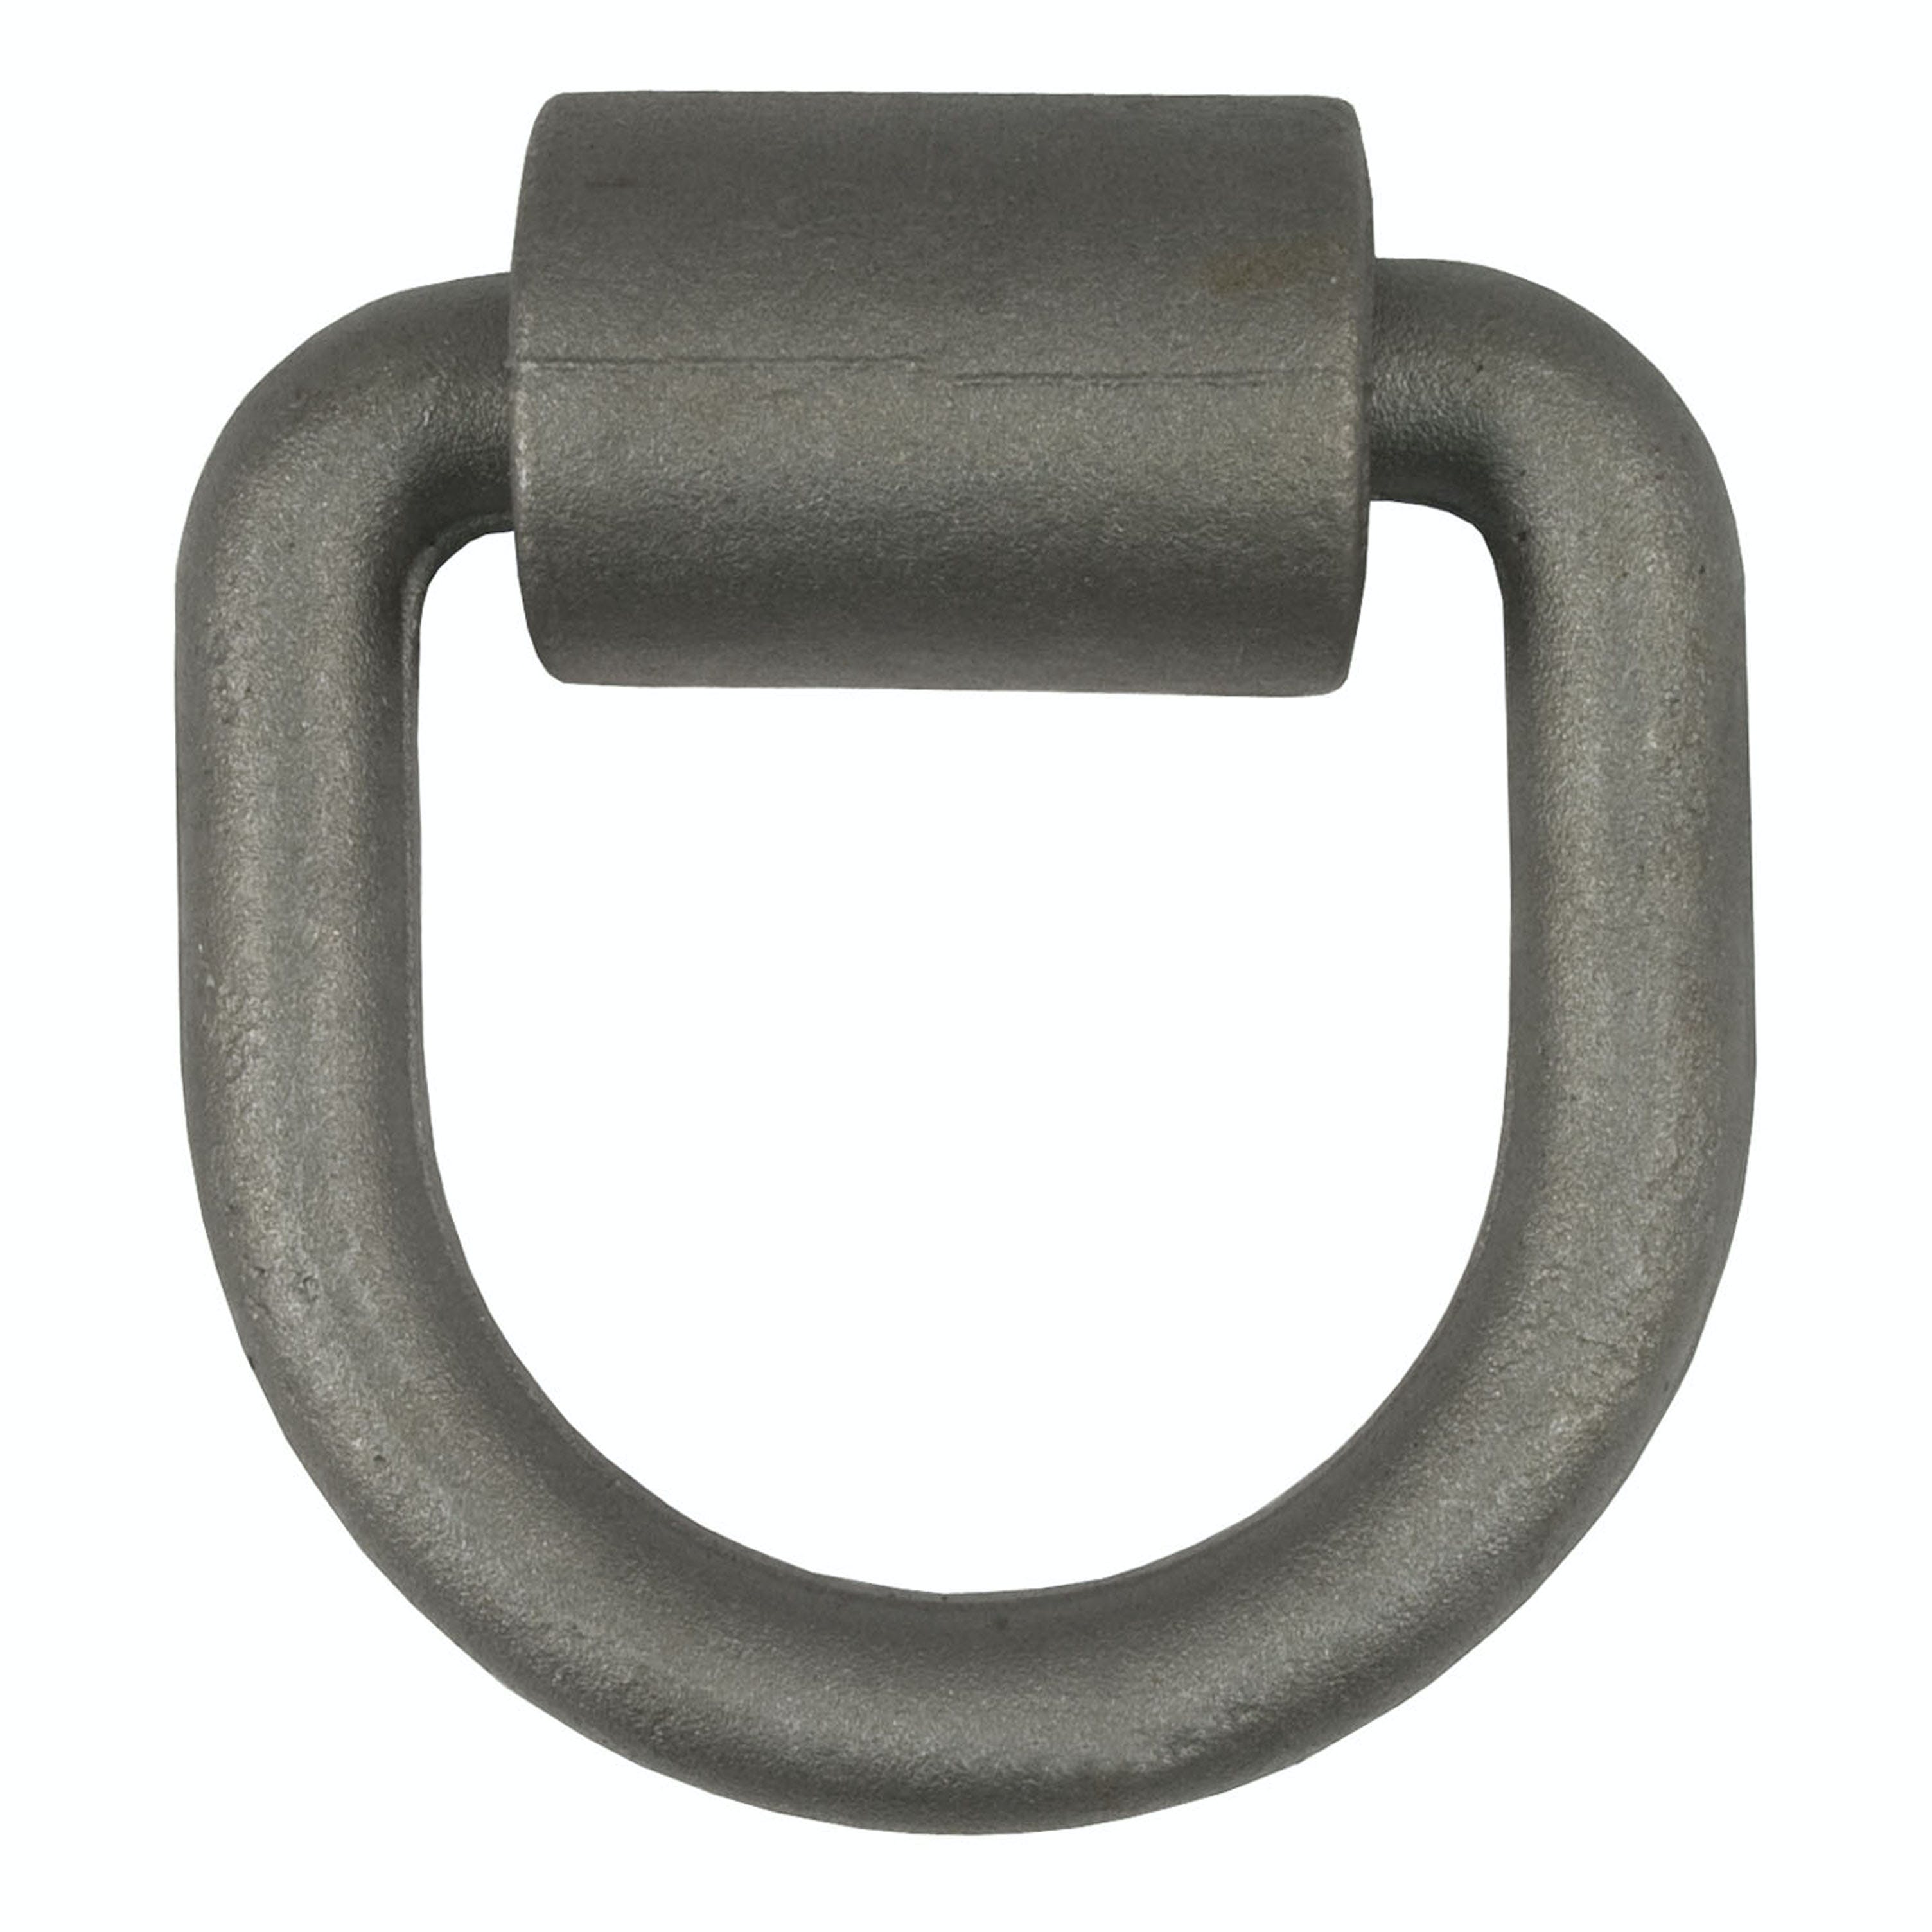 CURT 83750 3x 3 Weld-On Tie-Down D-Ring (6,100 lbs, Raw Steel)